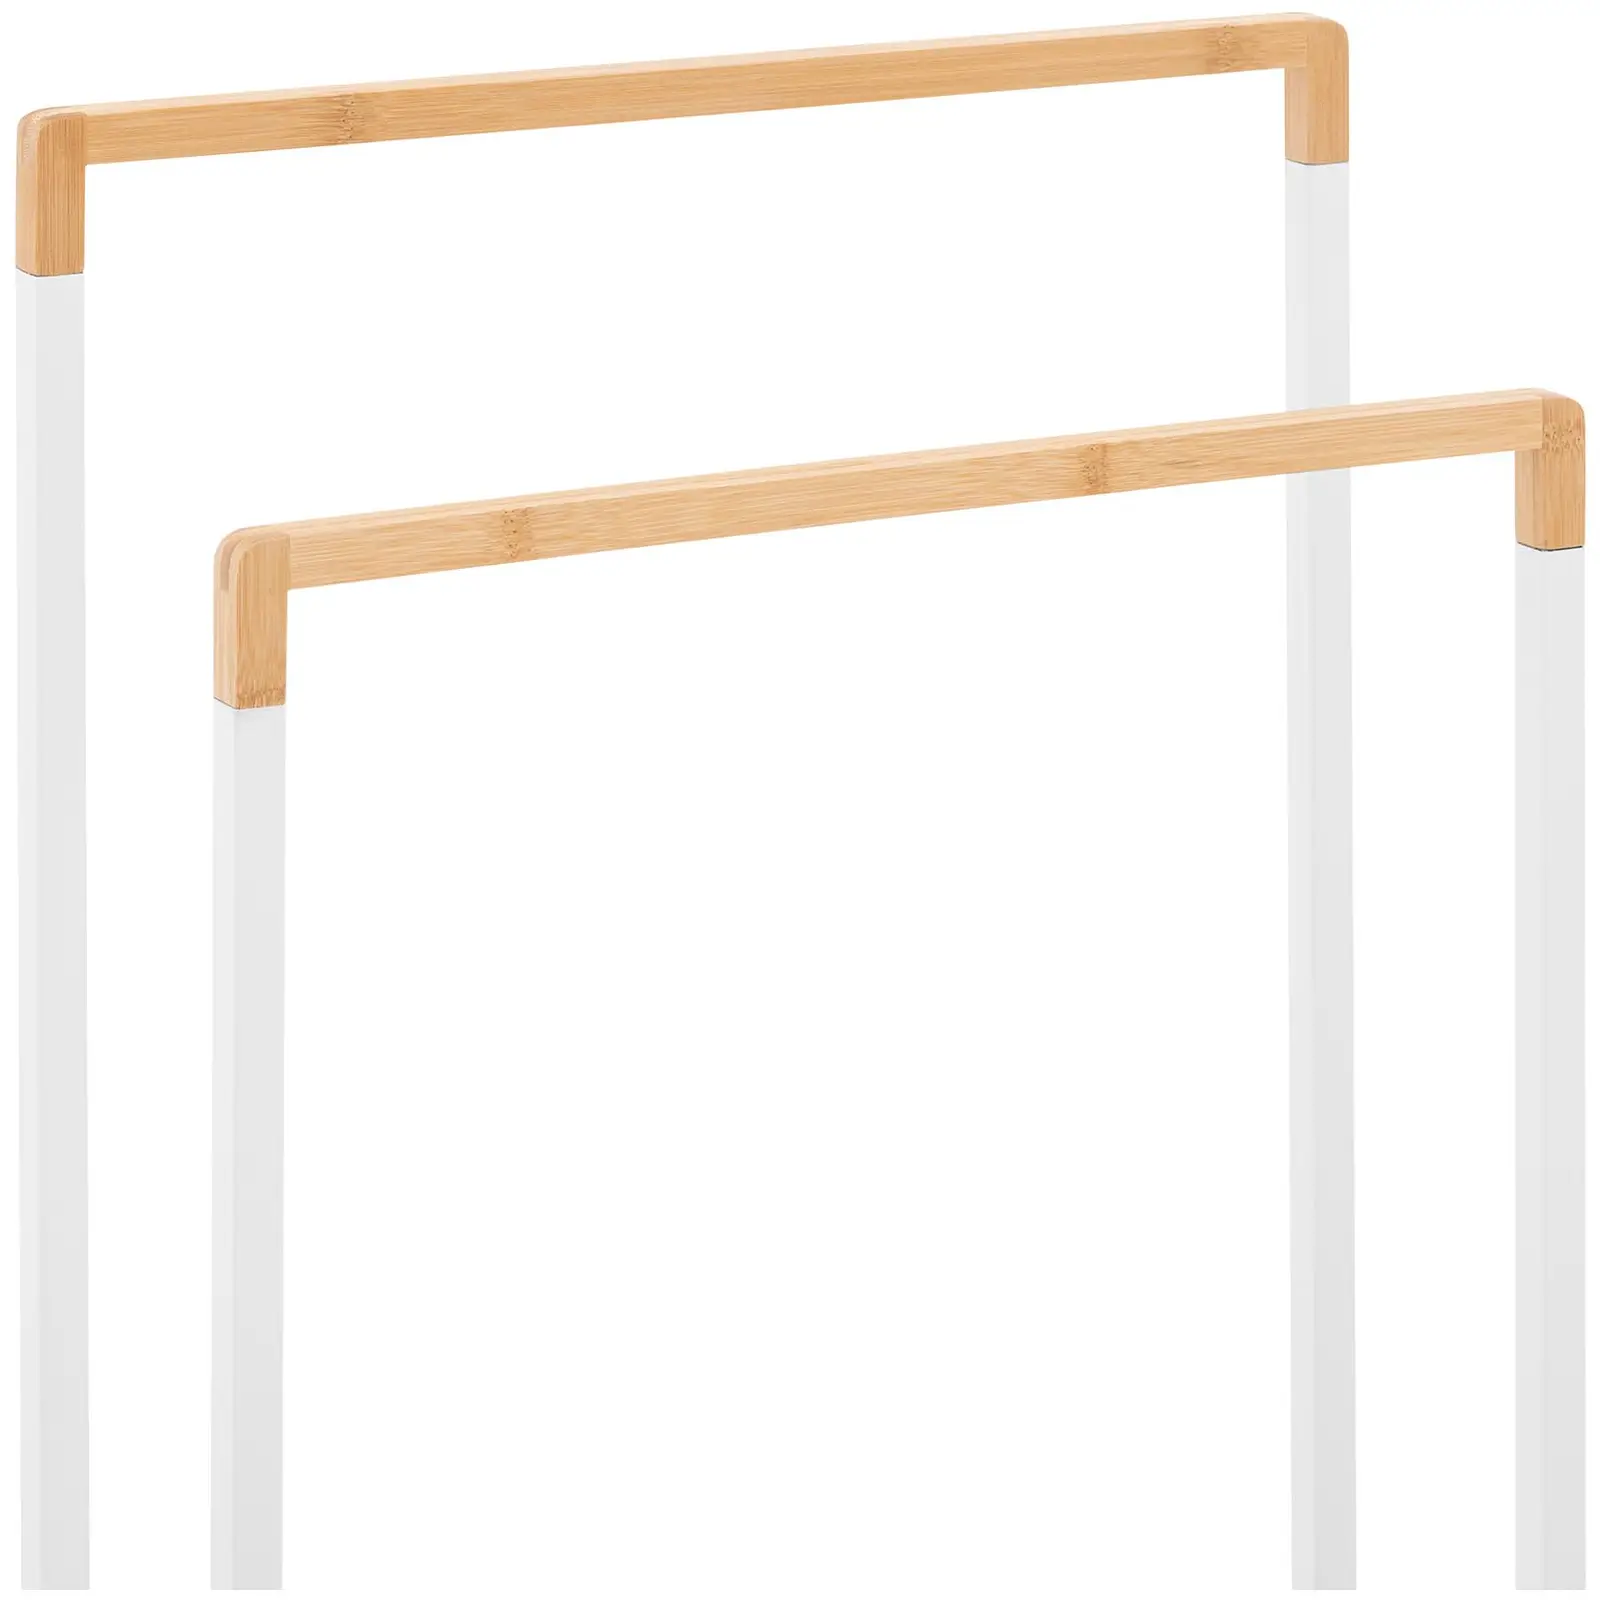 Porte serviette sur pied - 2 barres - Bambou/Blanc